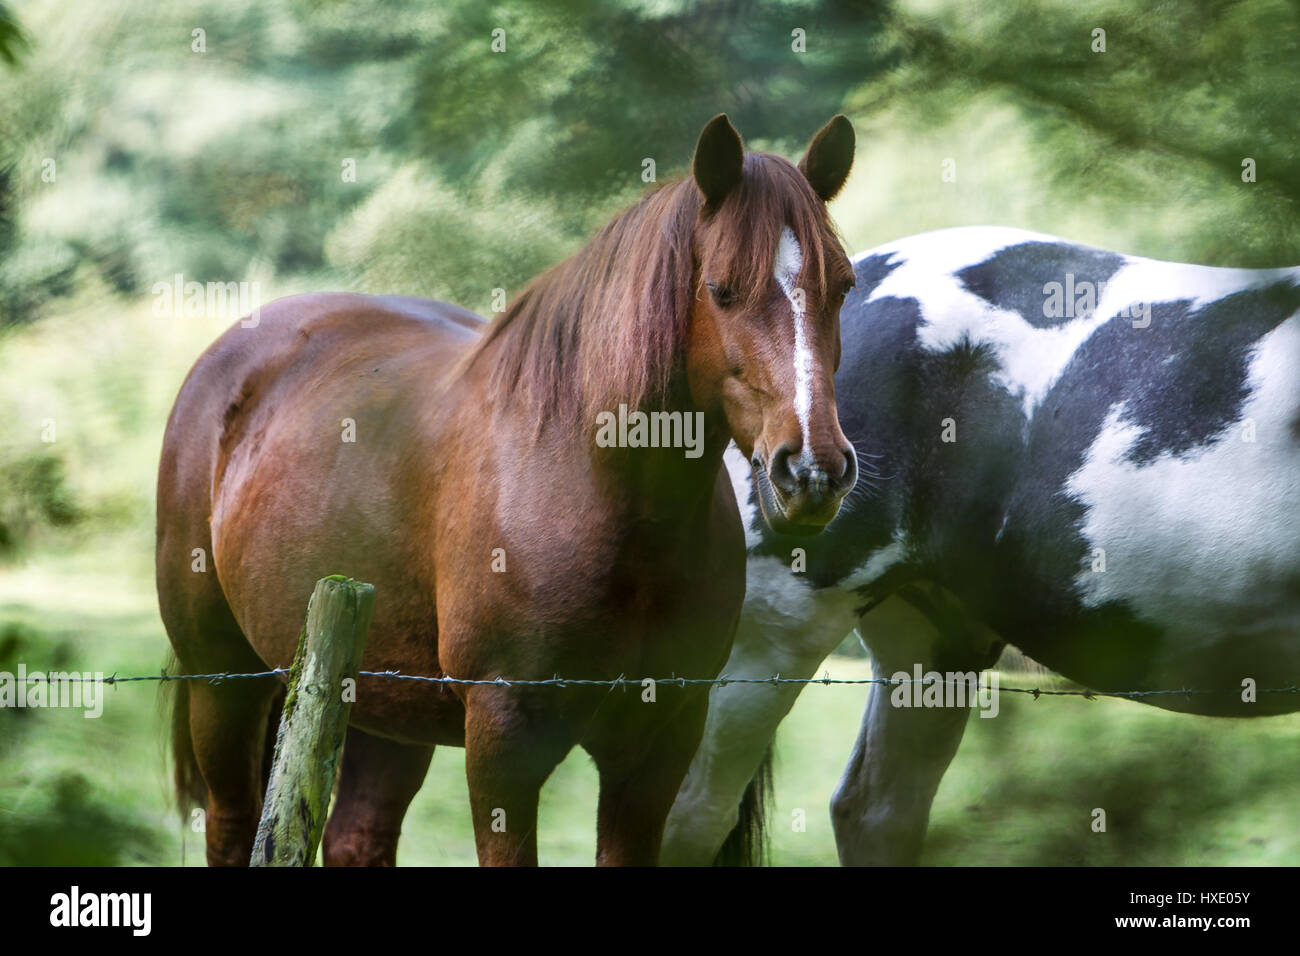 Zwei Pferde stehen von einem Zaun umgeben von grünen Bäumen Stockfoto